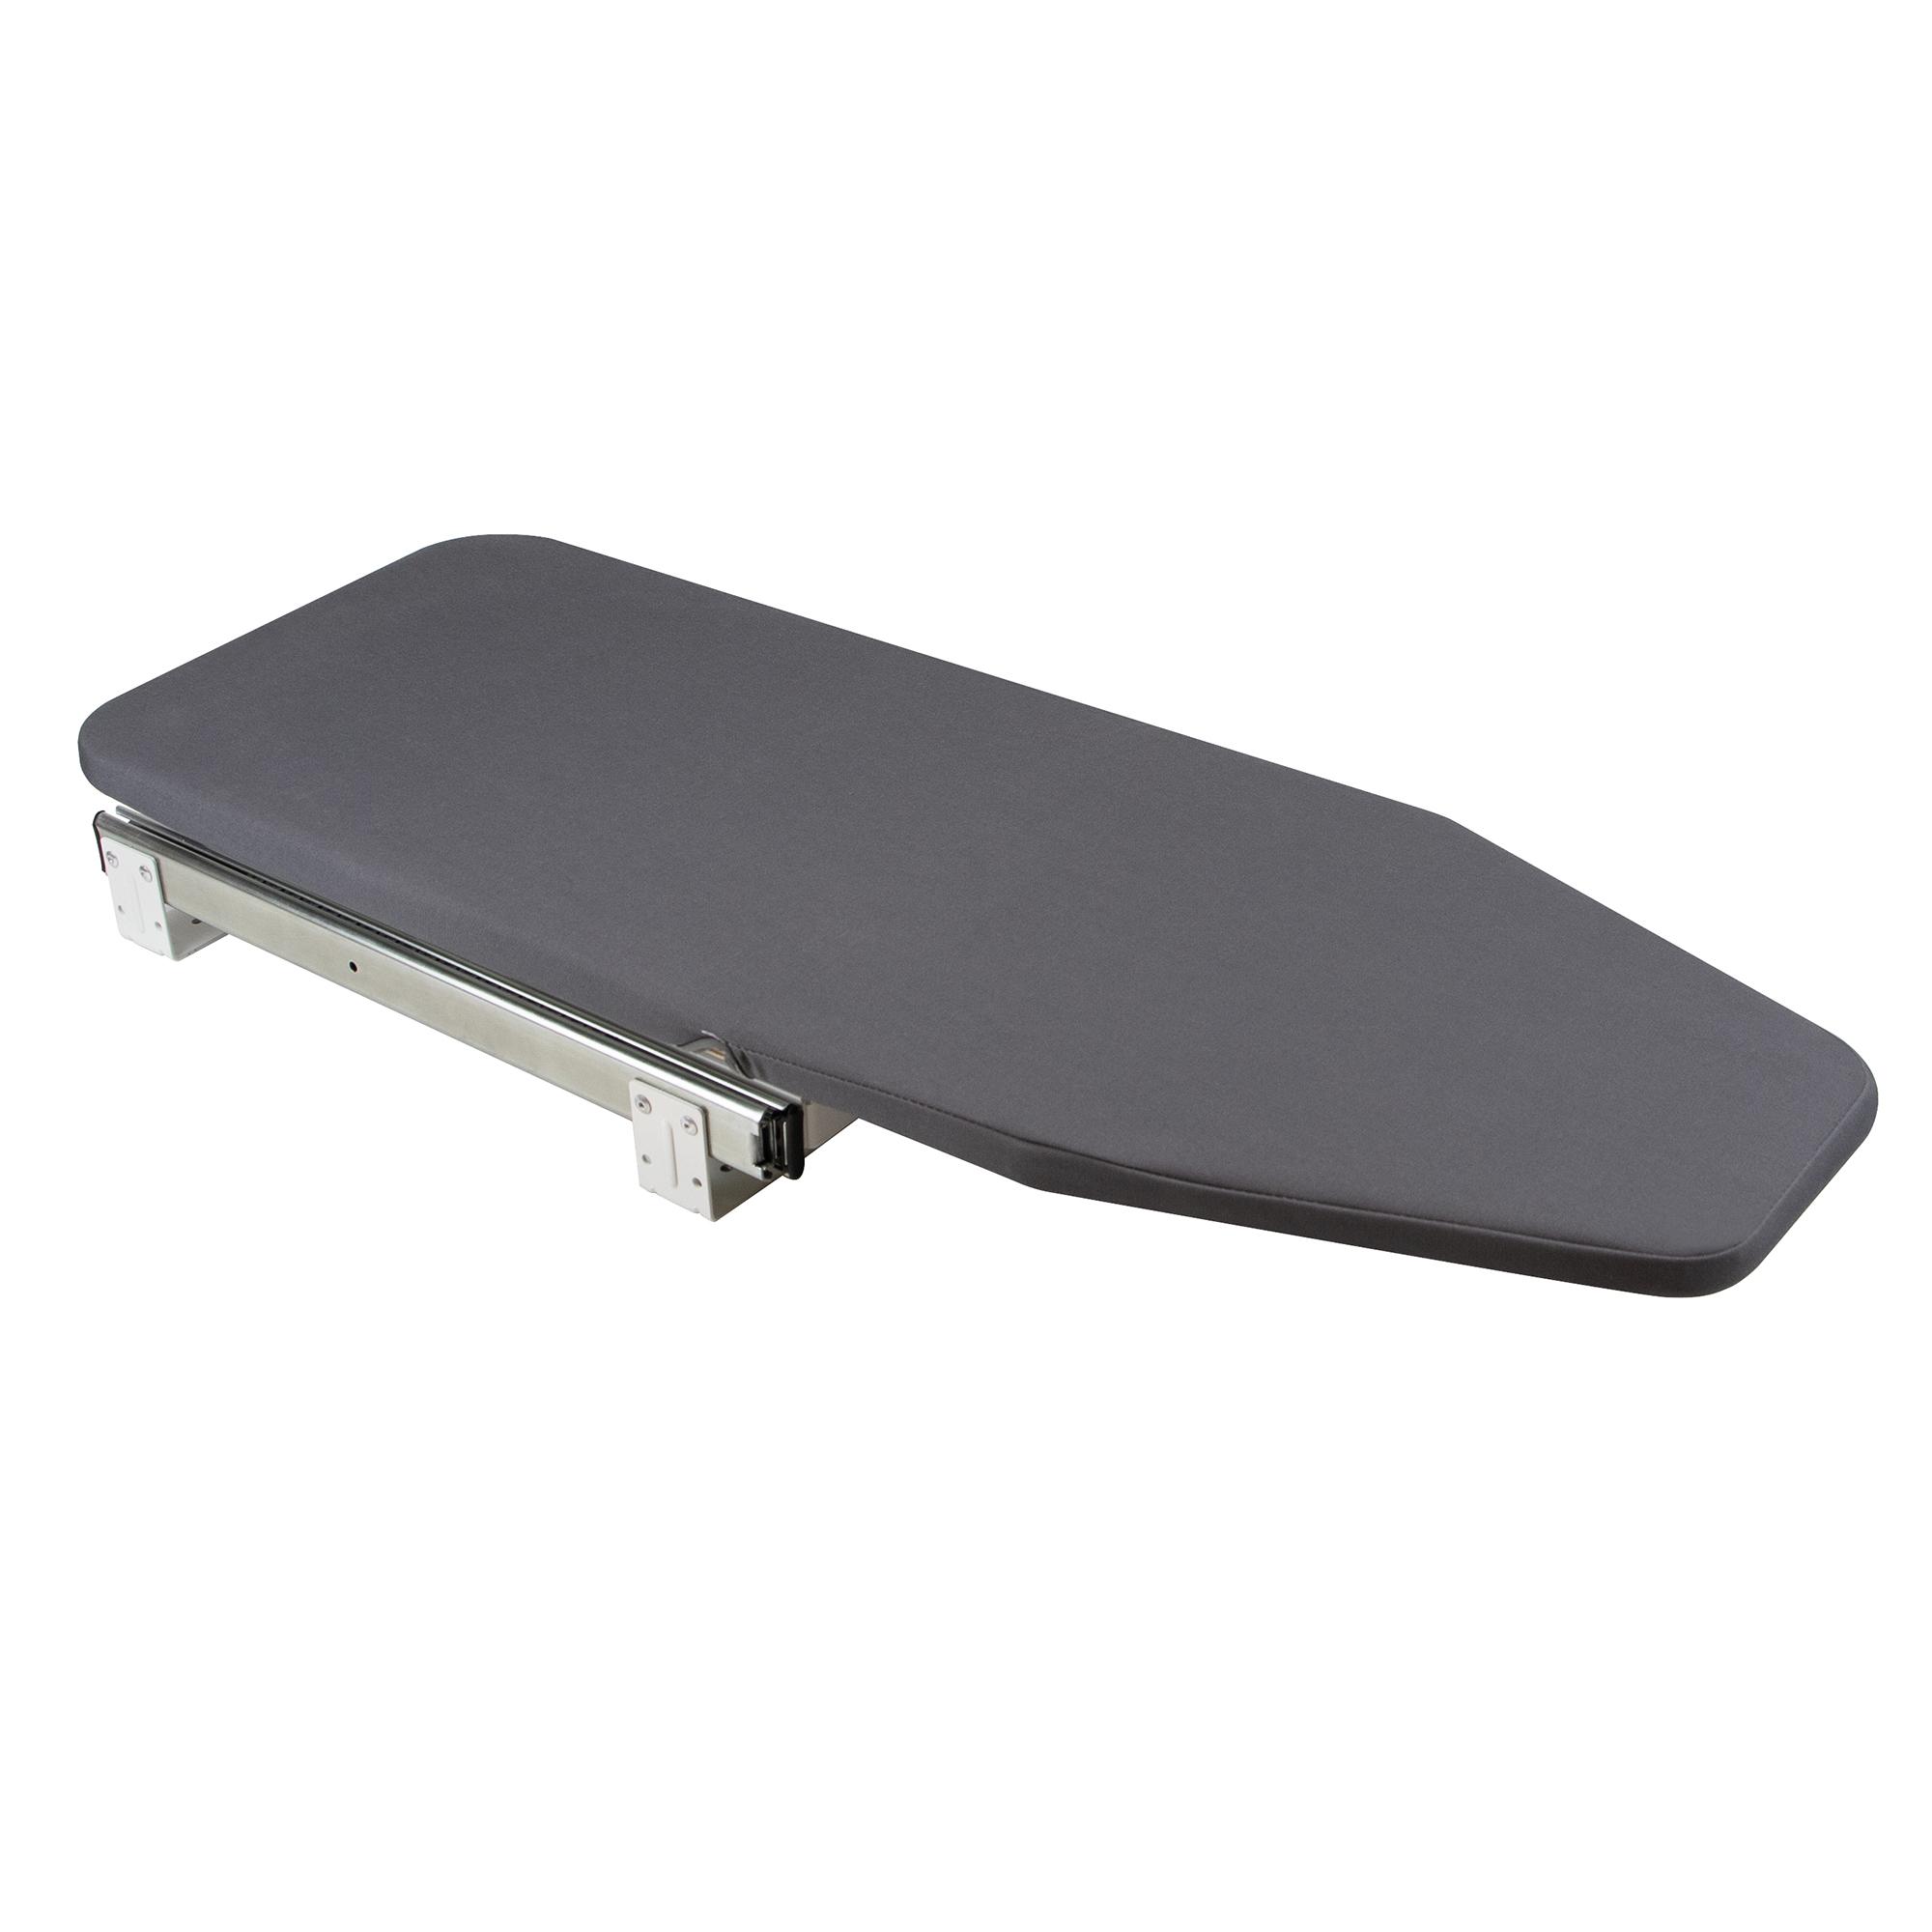  Tabla de planchar extraíble, tabla de planchar plegable para  montaje en pared, tabla de planchar retráctil, armario extraíble para  guardar en el gabinete, fácil de instalar (tamaño: 3.74 x 11.8 pulgadas) 